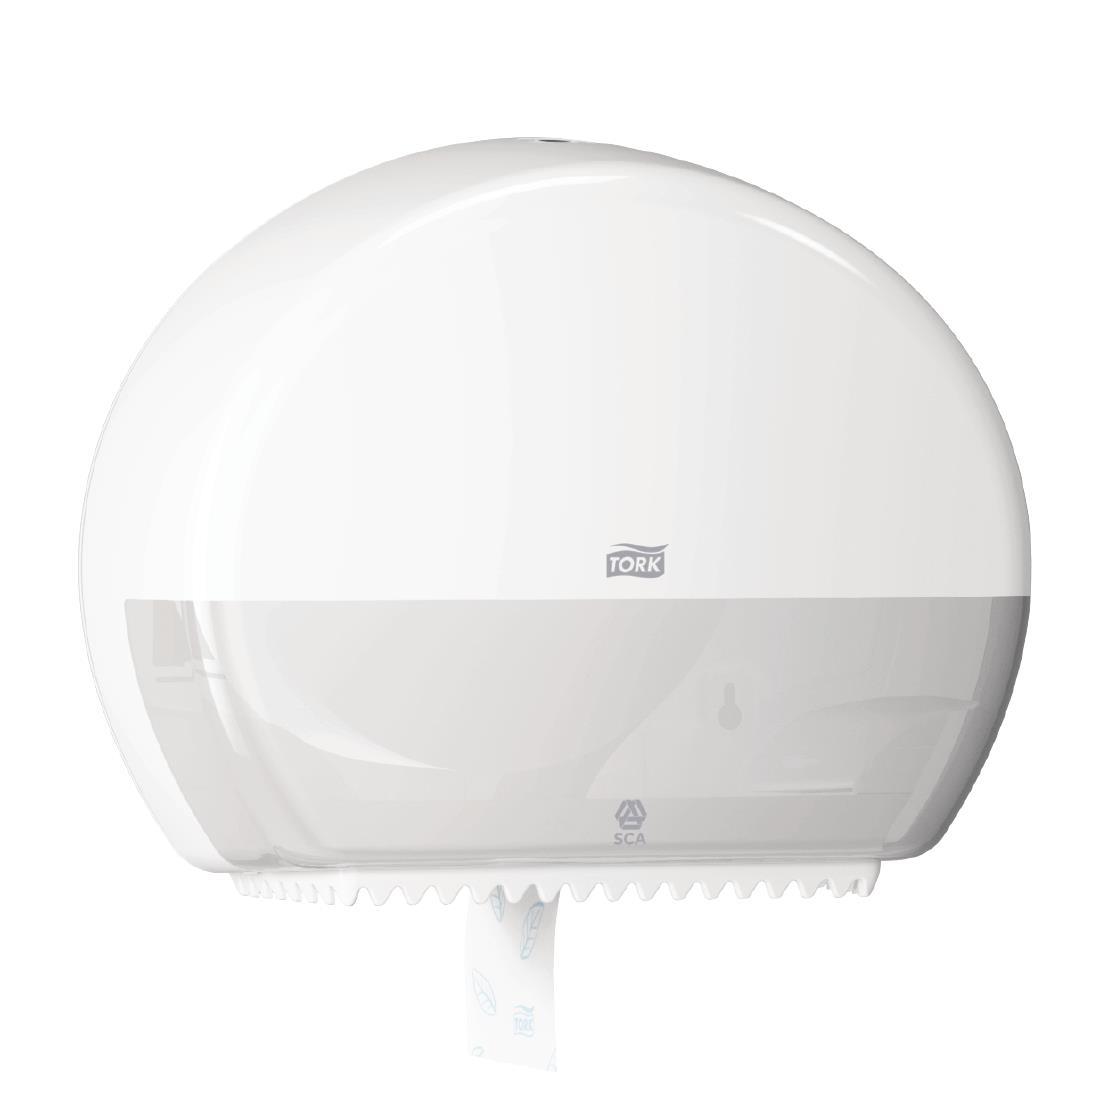 Tork Mini Jumbo Toilet Roll Dispenser White - DB463  - 5